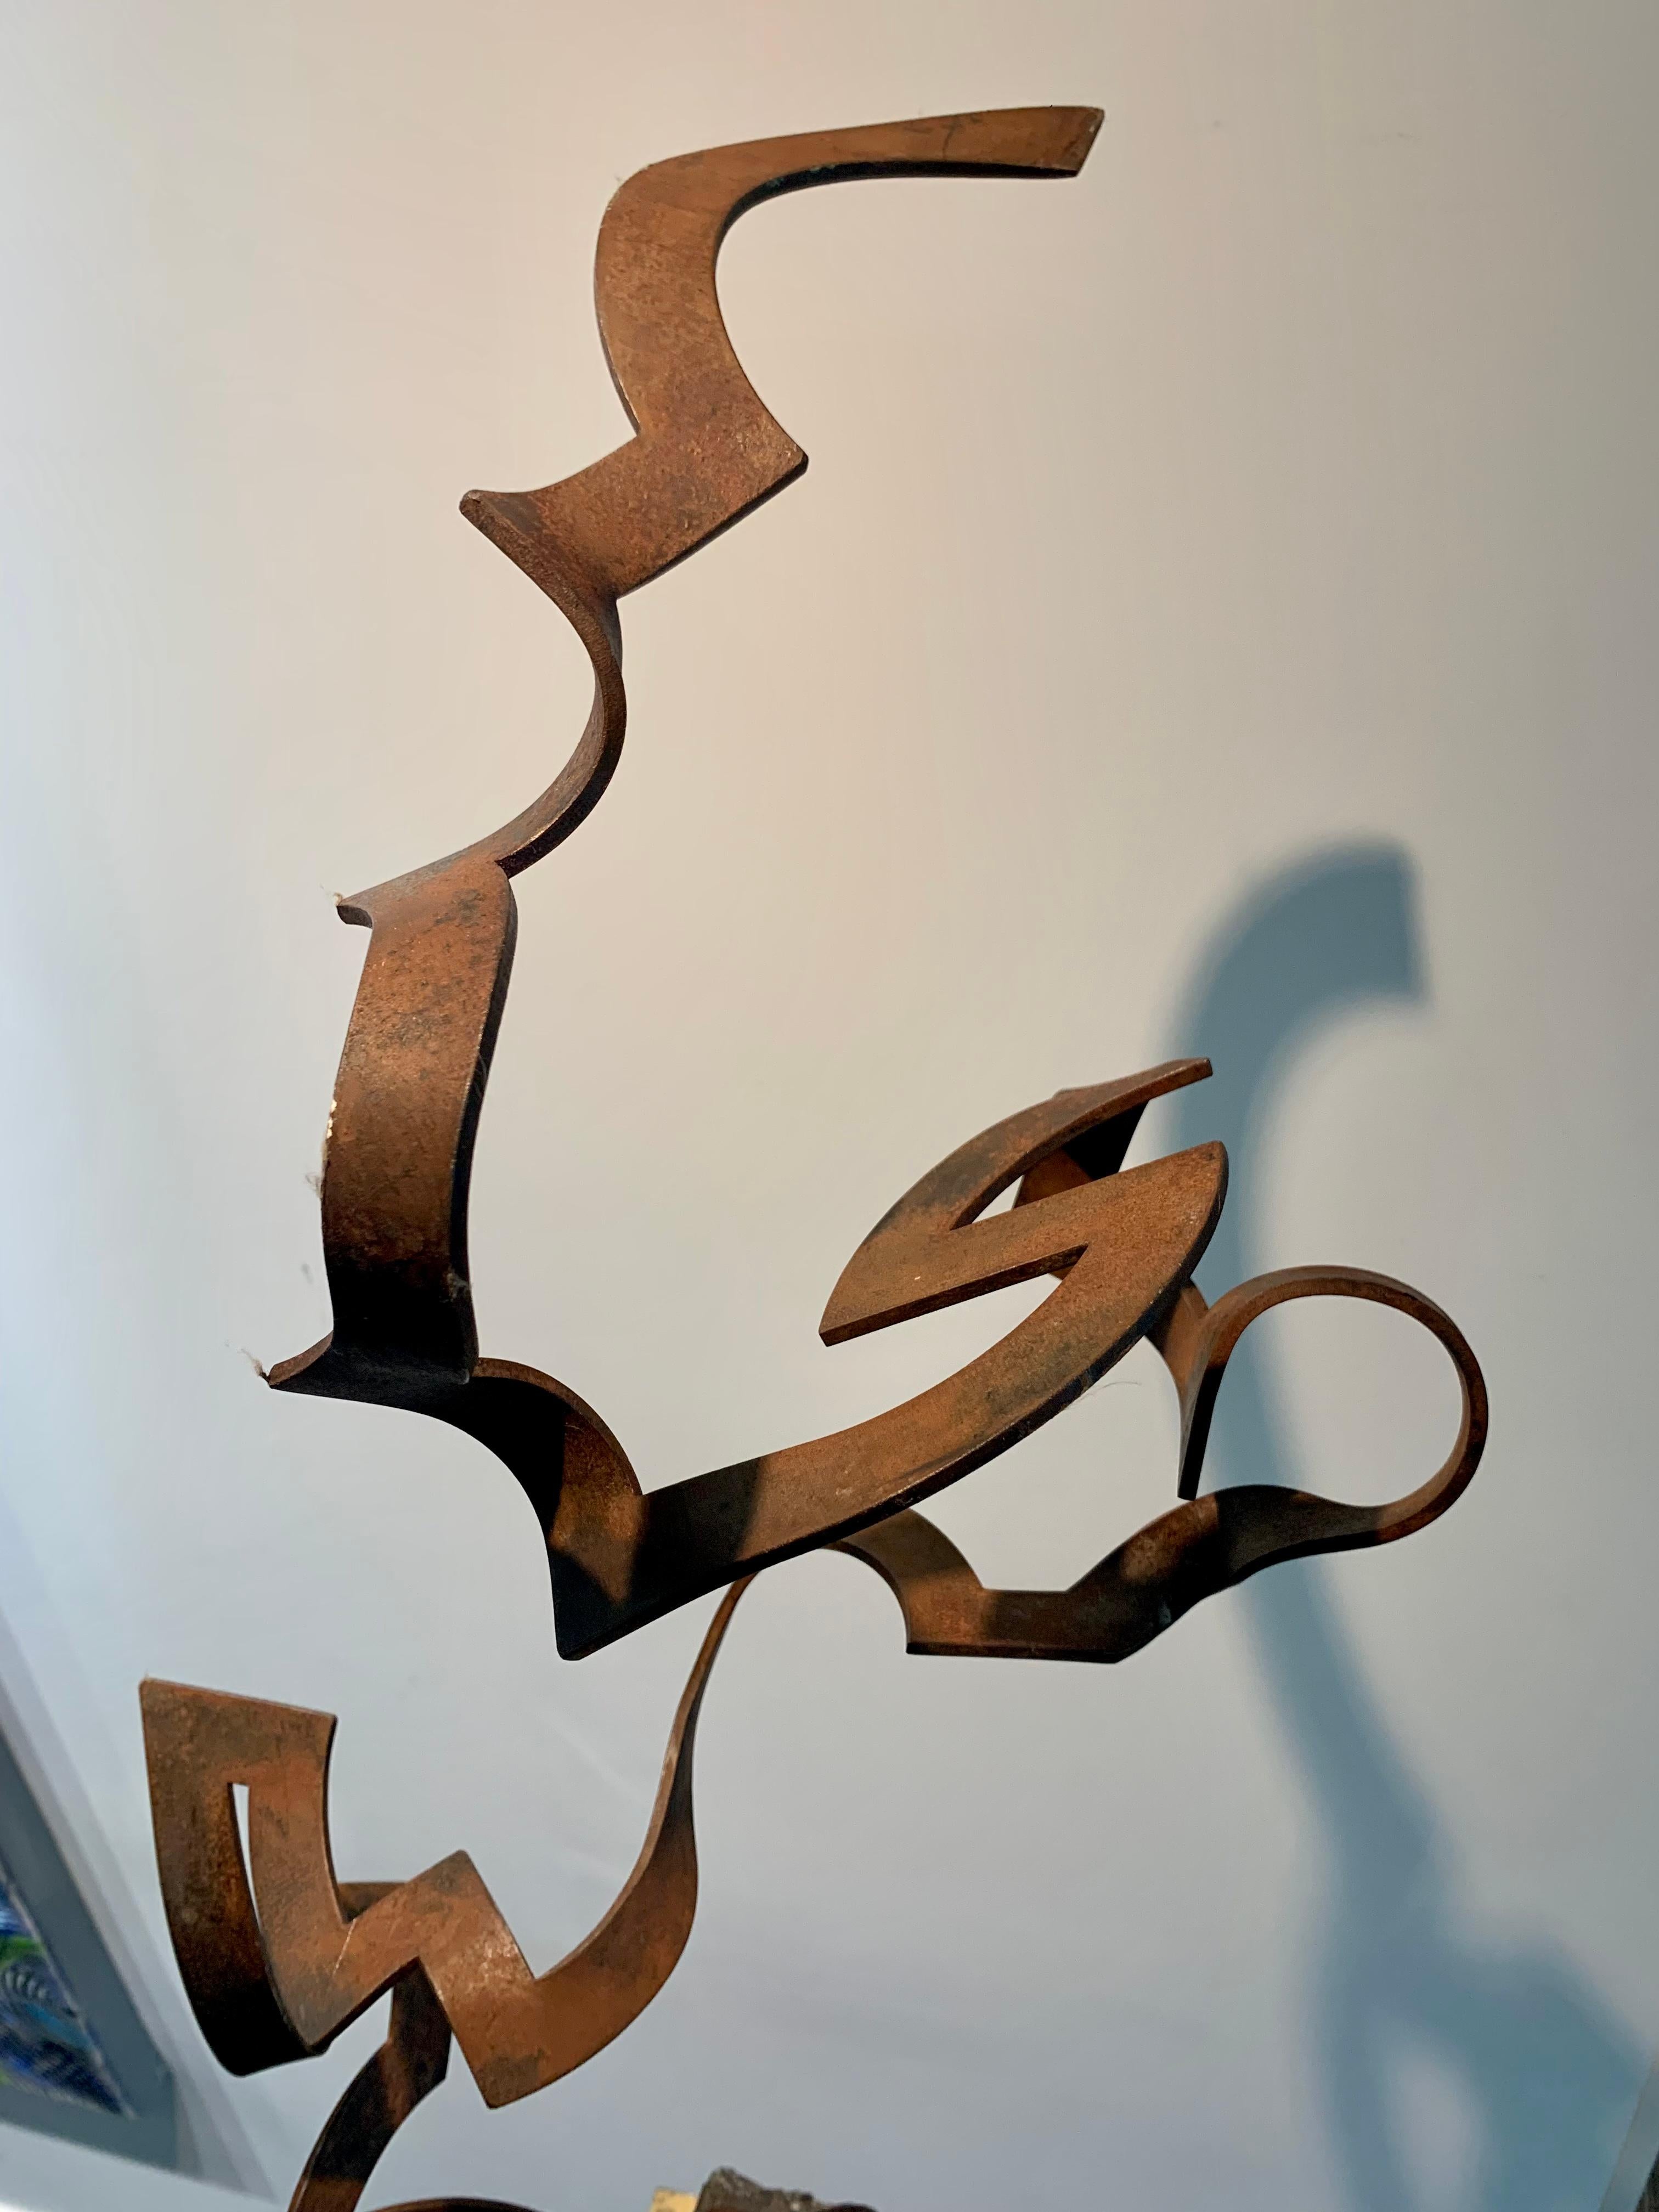 Steel Dance by Kuno Vollet Contemporary Steel Sculpture for indoor or outdoor For Sale 6